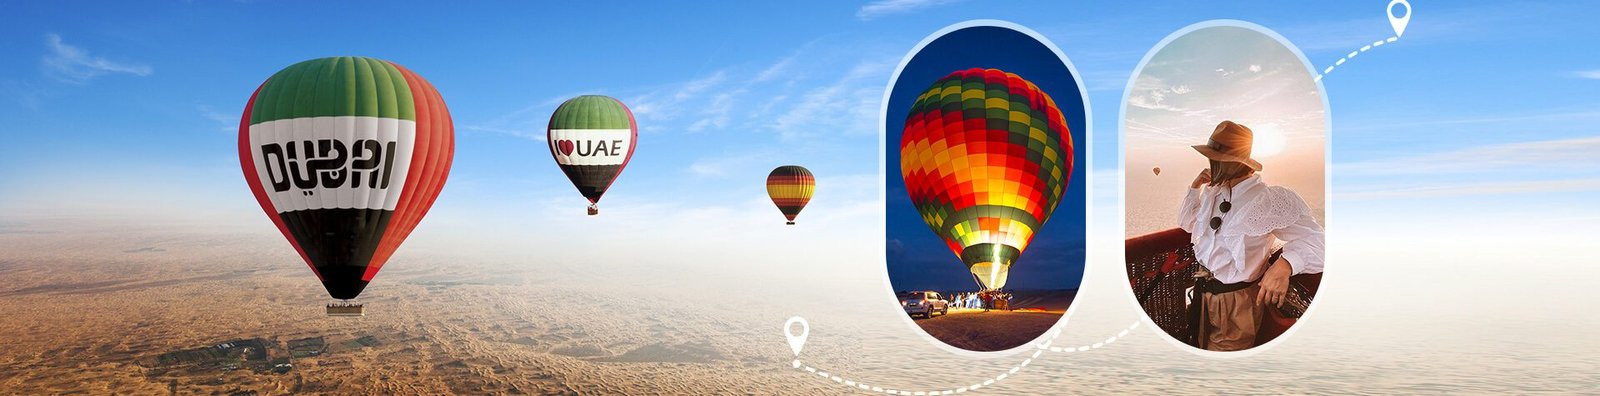 Hot Air Balloon Dubai Standard